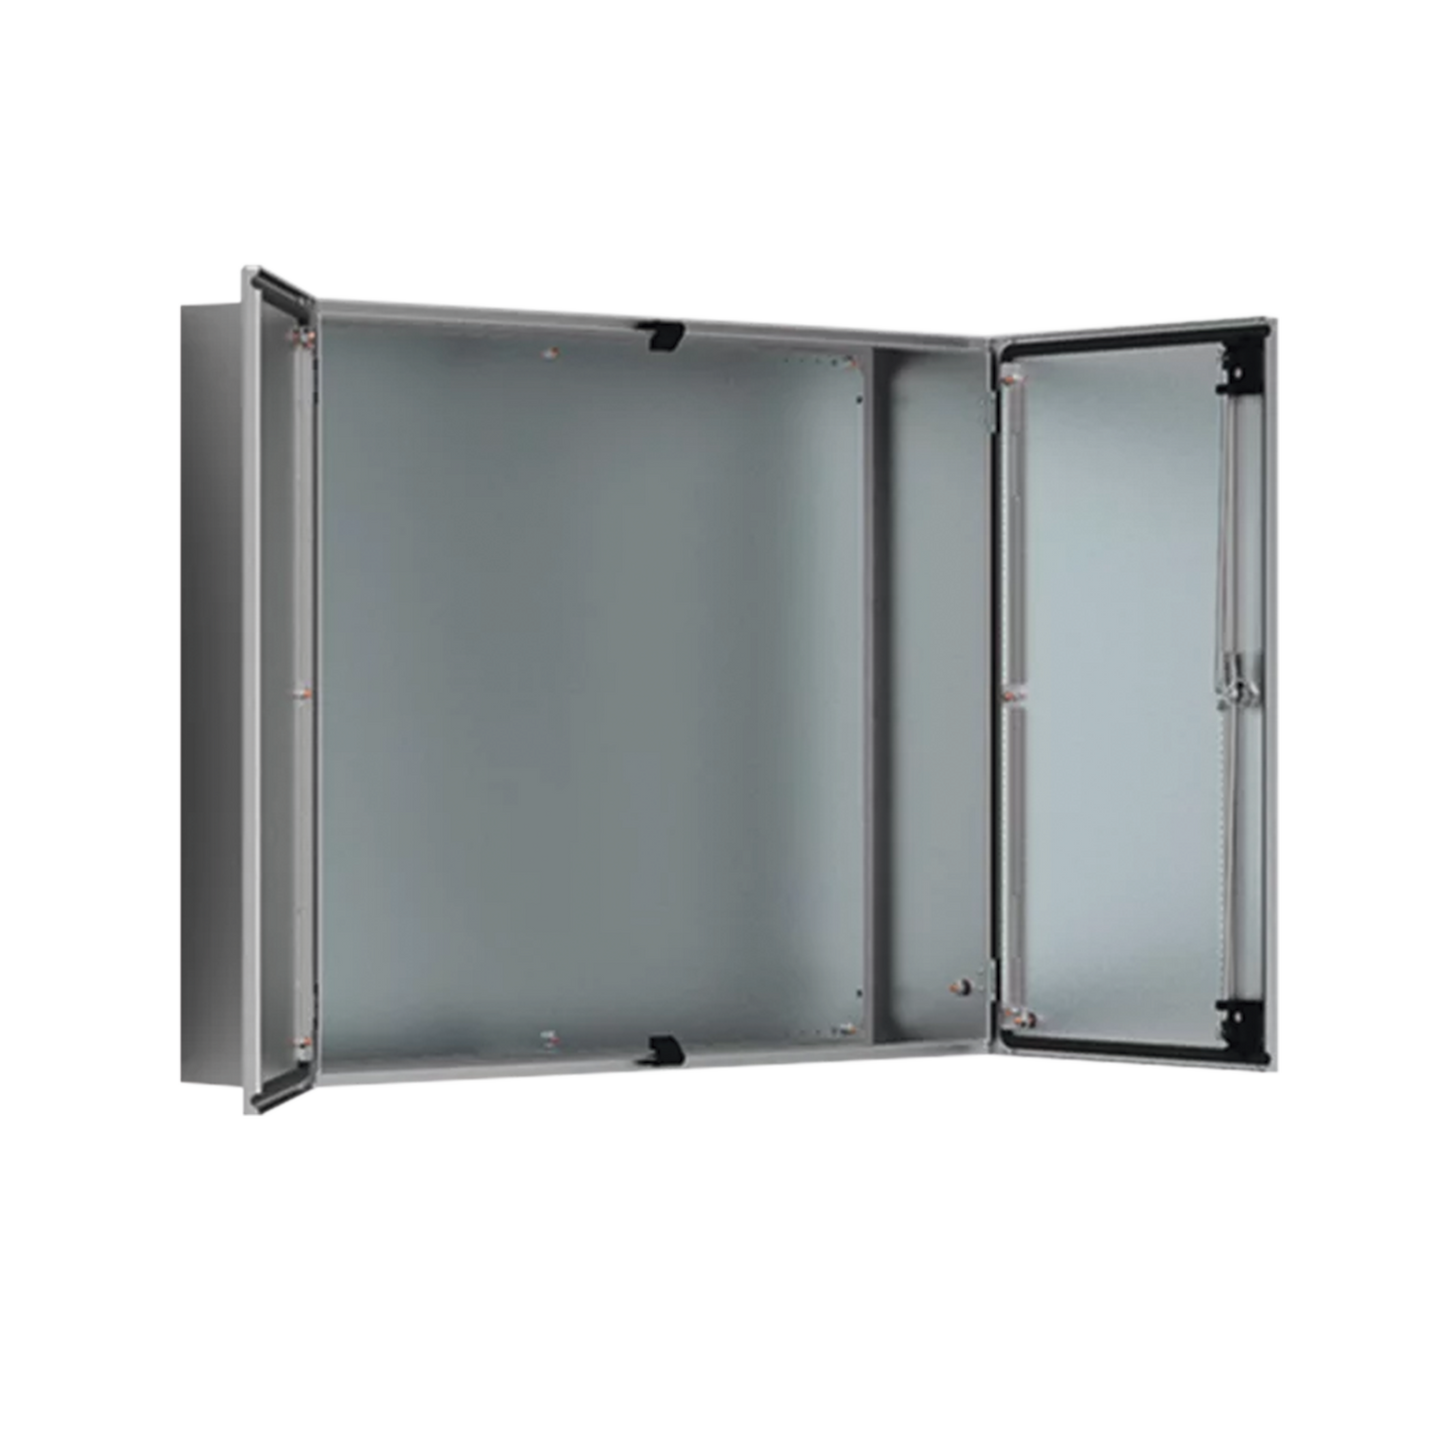 Gabinete de Doble Puerta, 1200 x 1200 x 400 mm, de Acero Inoxidable, Cepillado. Protección NEMA 12, IP55, IK10